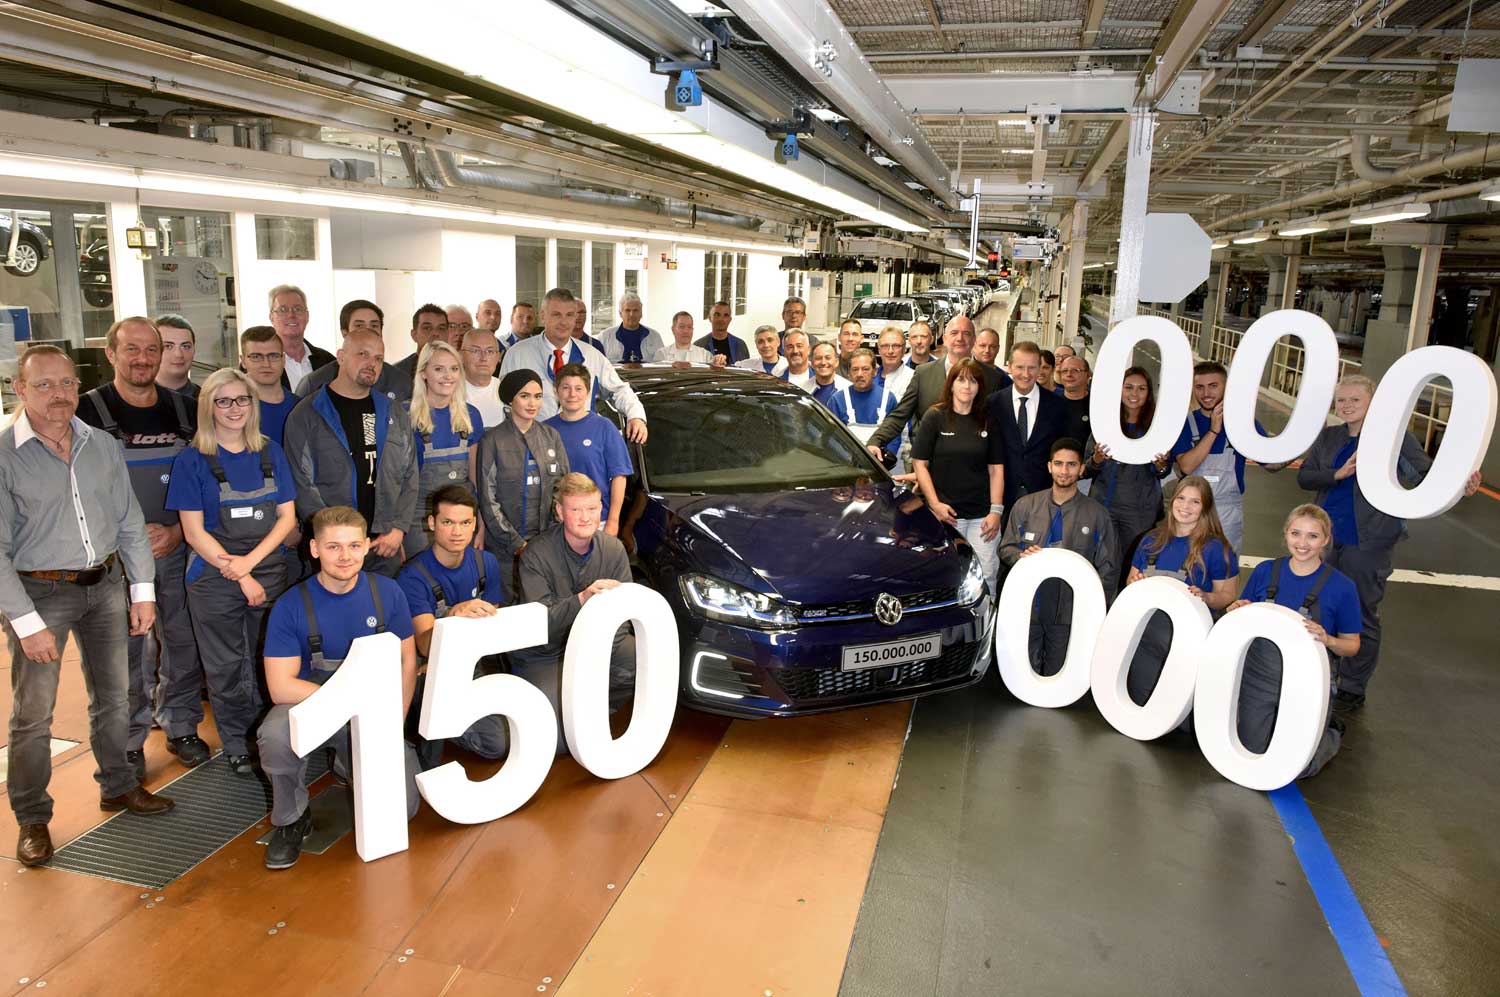 150 miljoenste door Volkswagen gemaakte auto rolt van de band